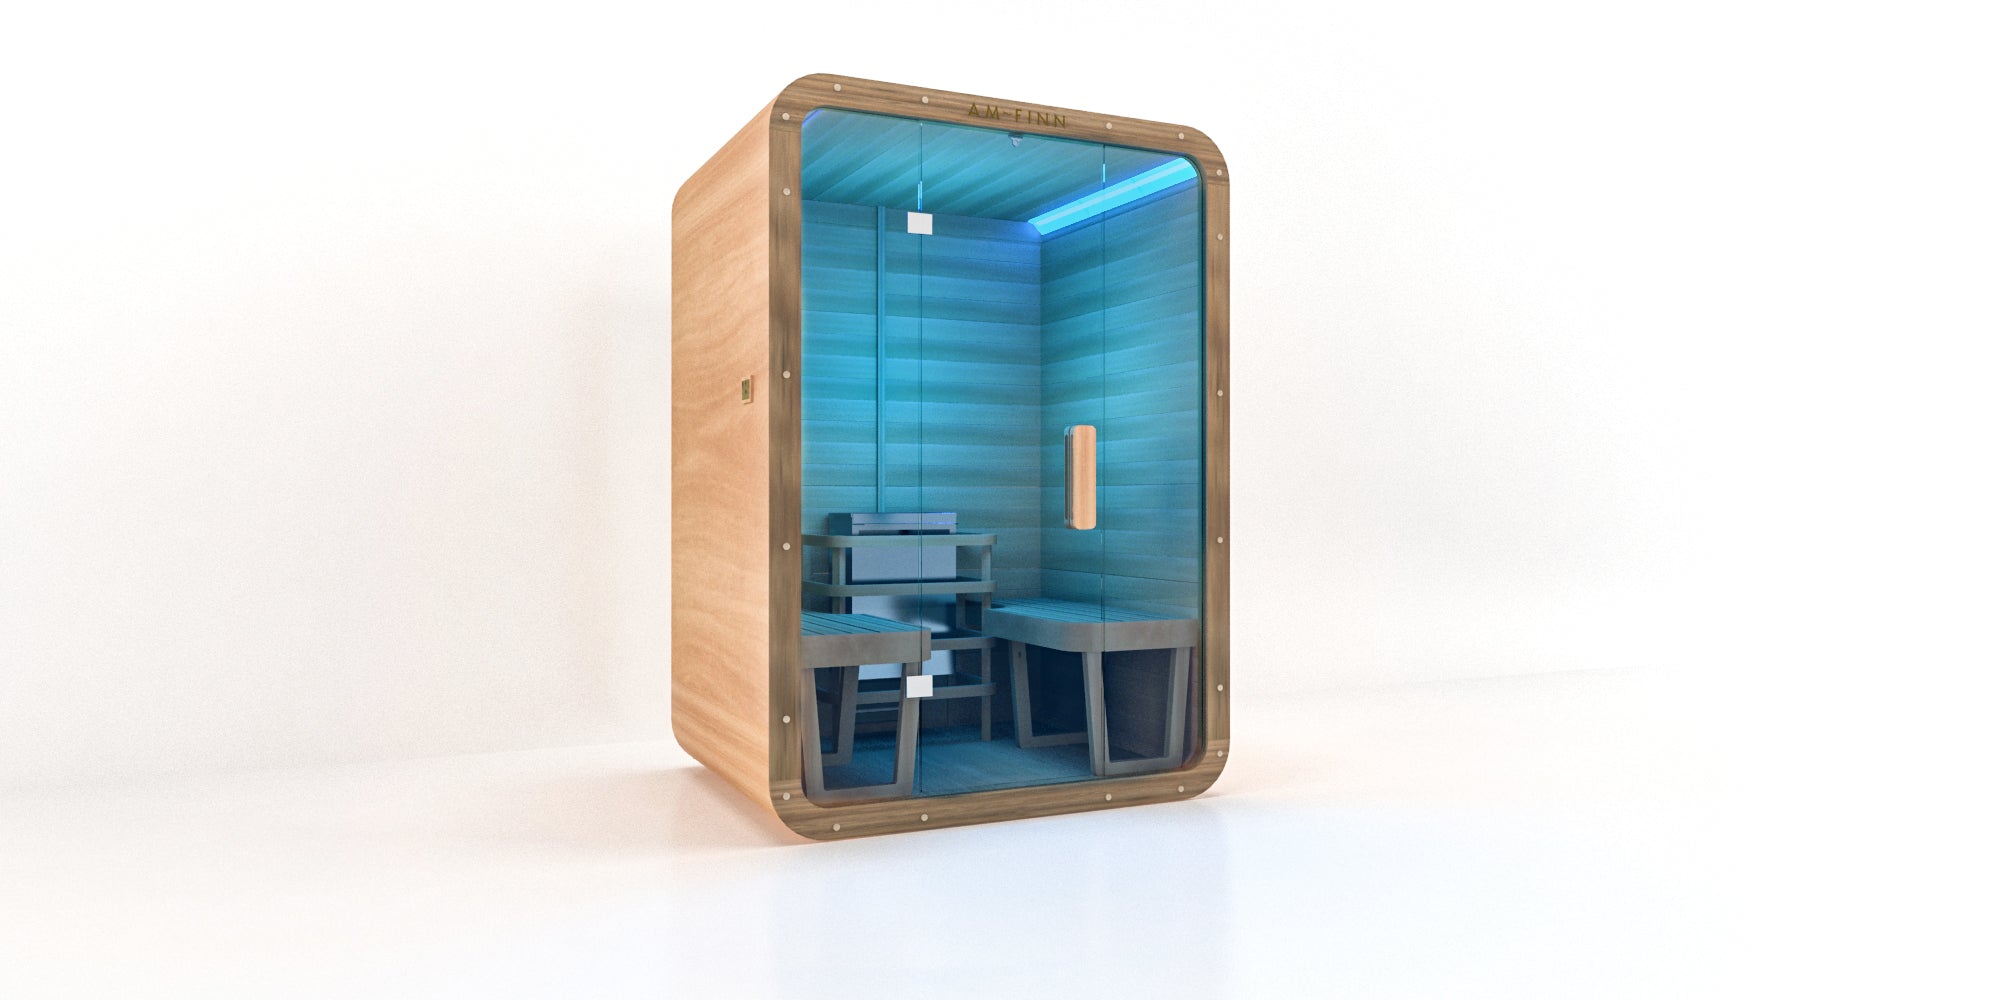 AM-FINN Trend Modular Sauna